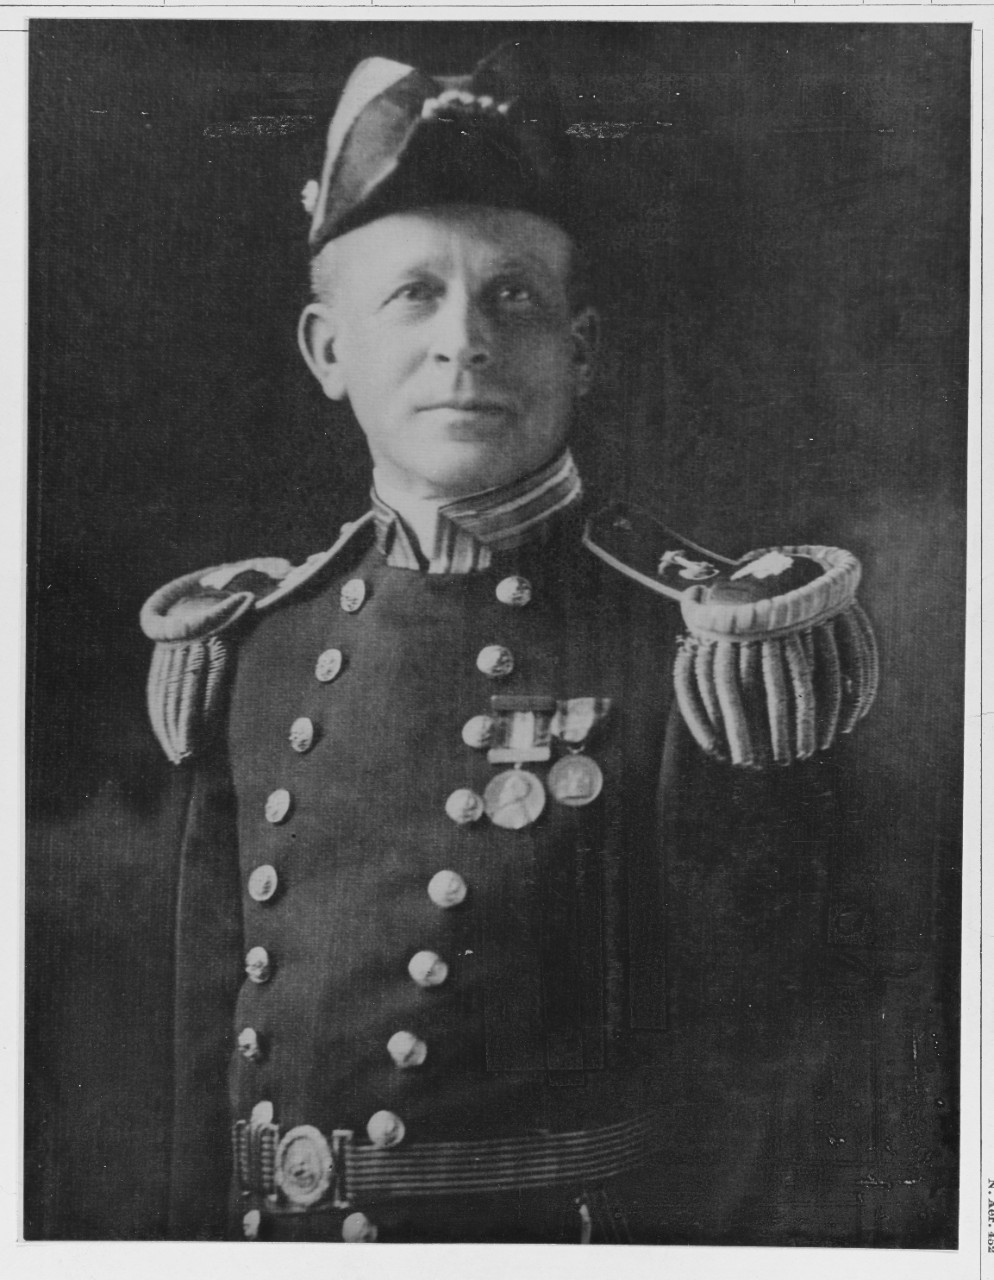 Rear Admiral H. J. Ziegemeier, USN.